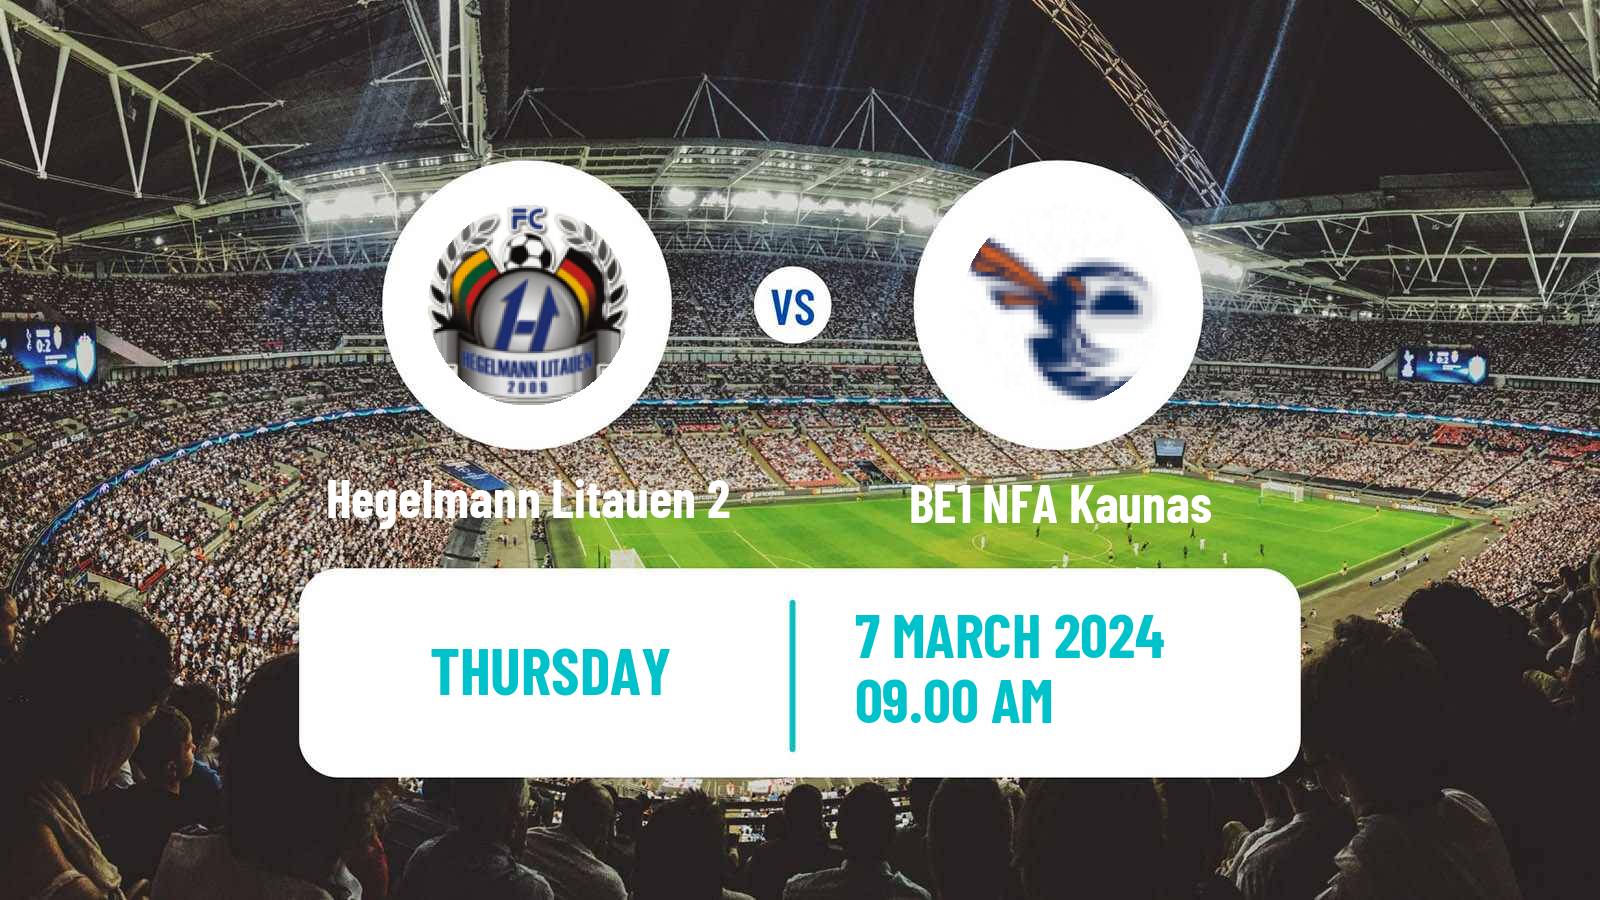 Soccer Lithuanian Division 2 Hegelmann Litauen 2 - BE1 NFA Kaunas